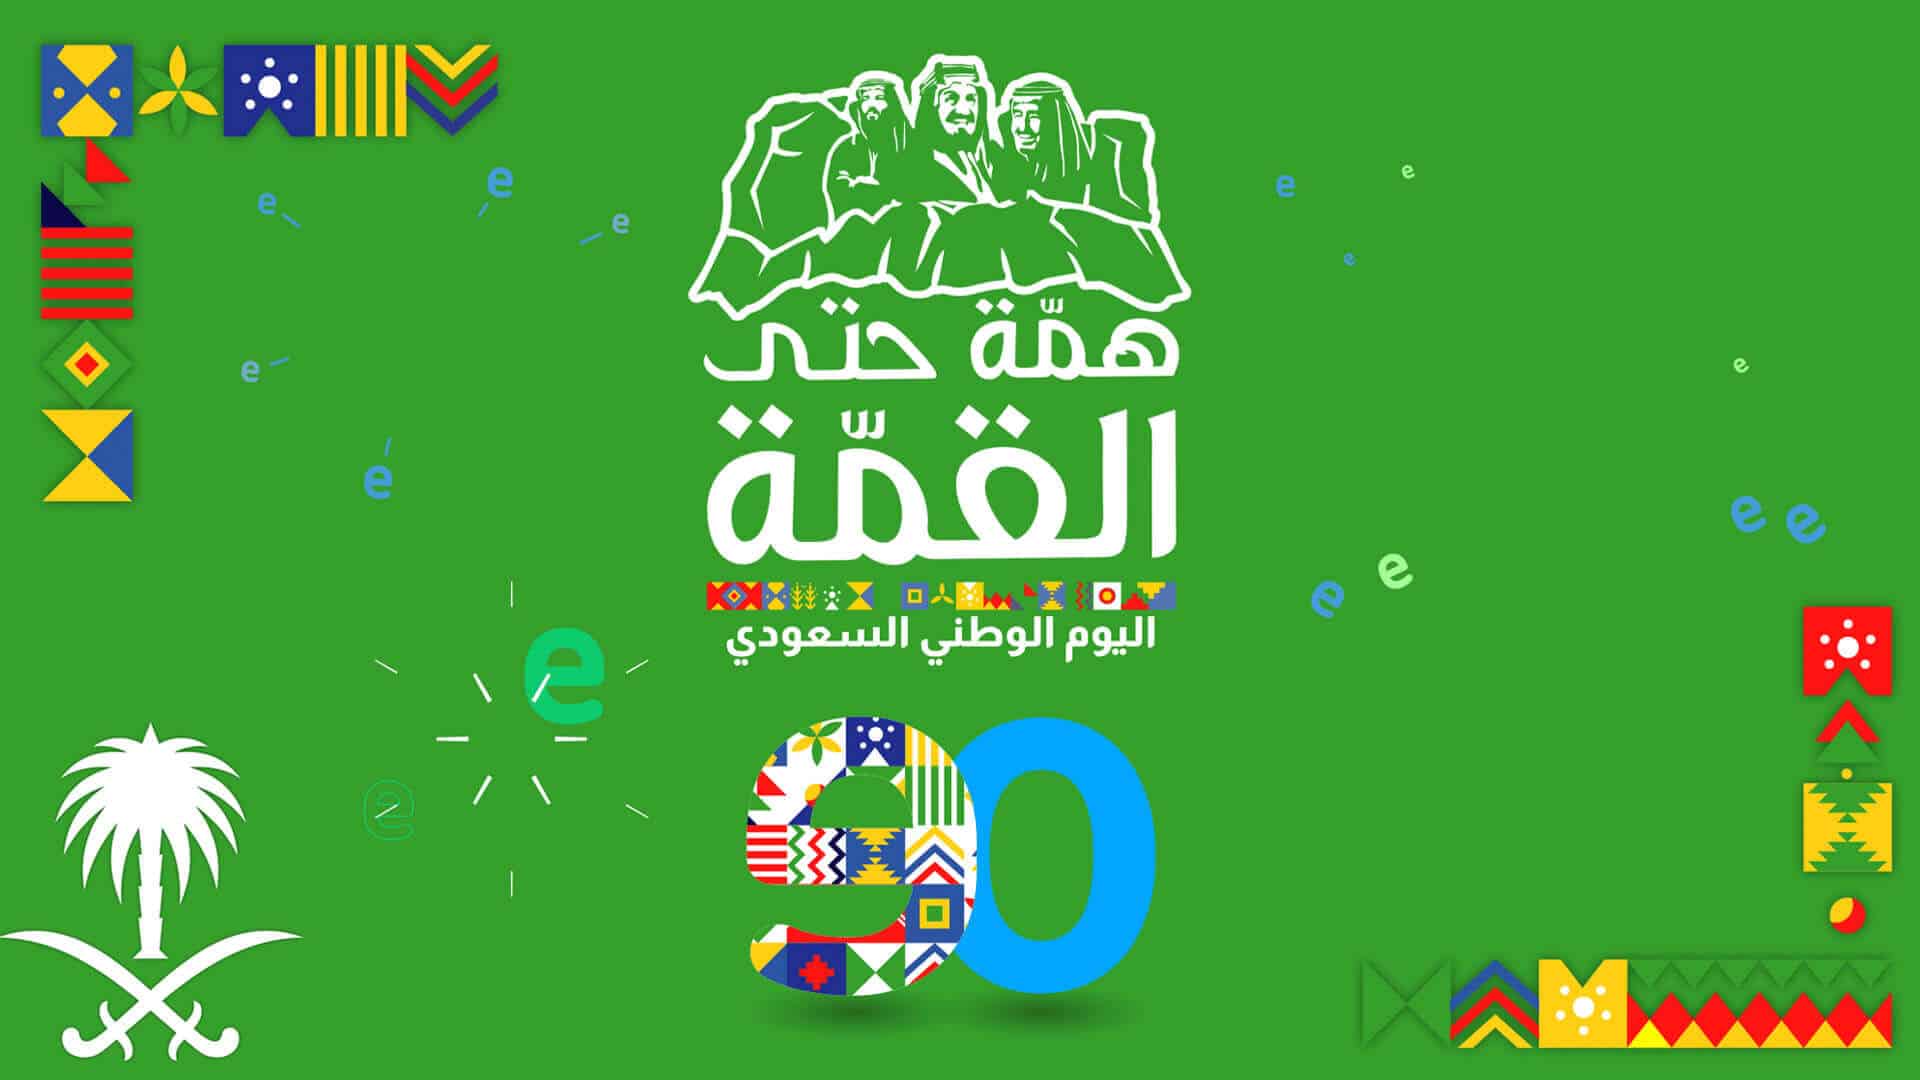 وكيل- اليوم الوطني المملكة العربية السعودية‎